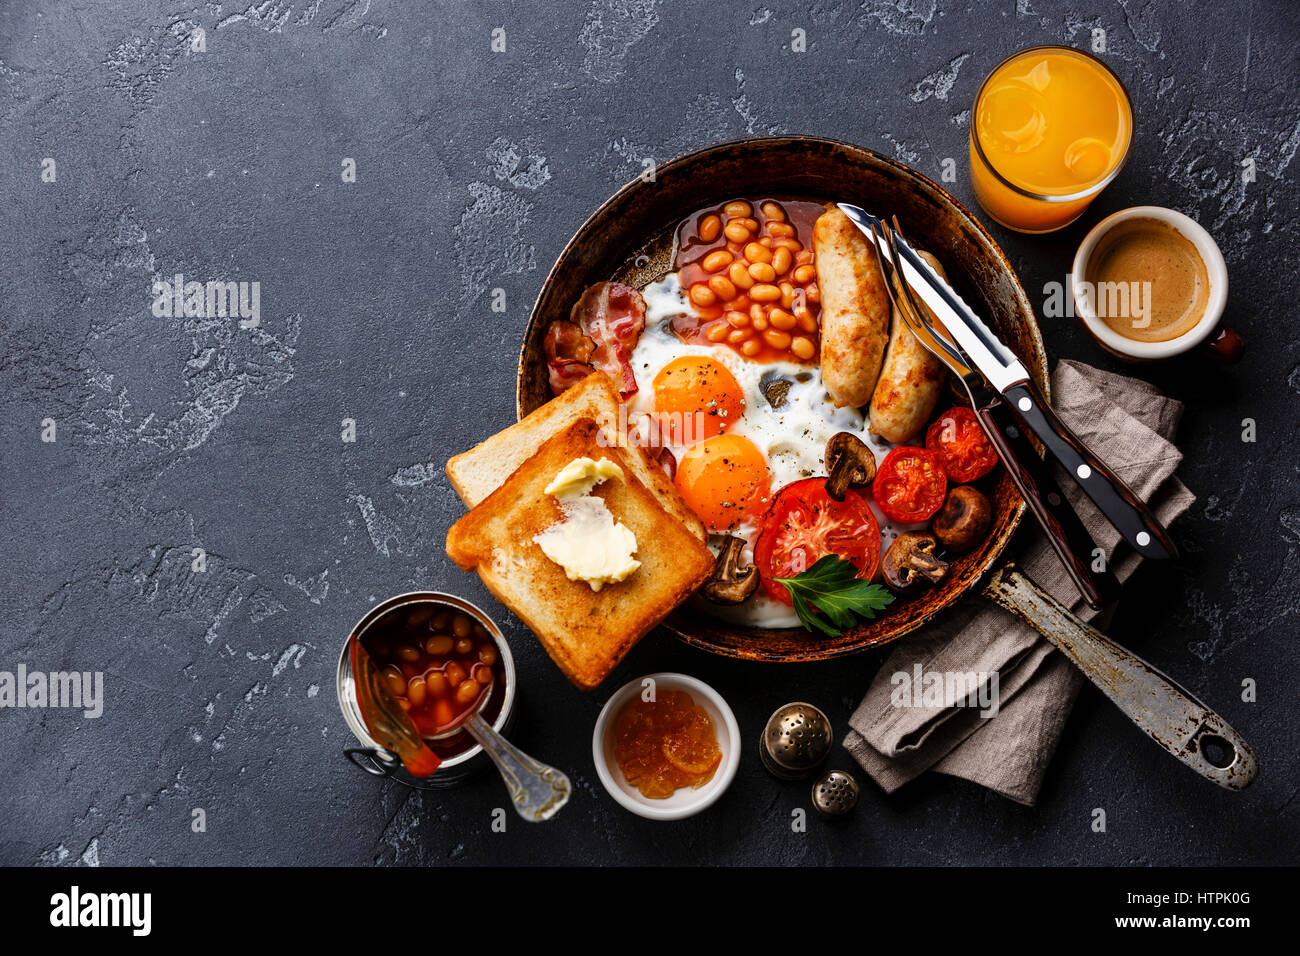 Desayuno inglés en sartén con huevos fritos, salchichas, tocino, frijoles, tostadas y café en piedra oscura espacio copia de fondo Foto de stock